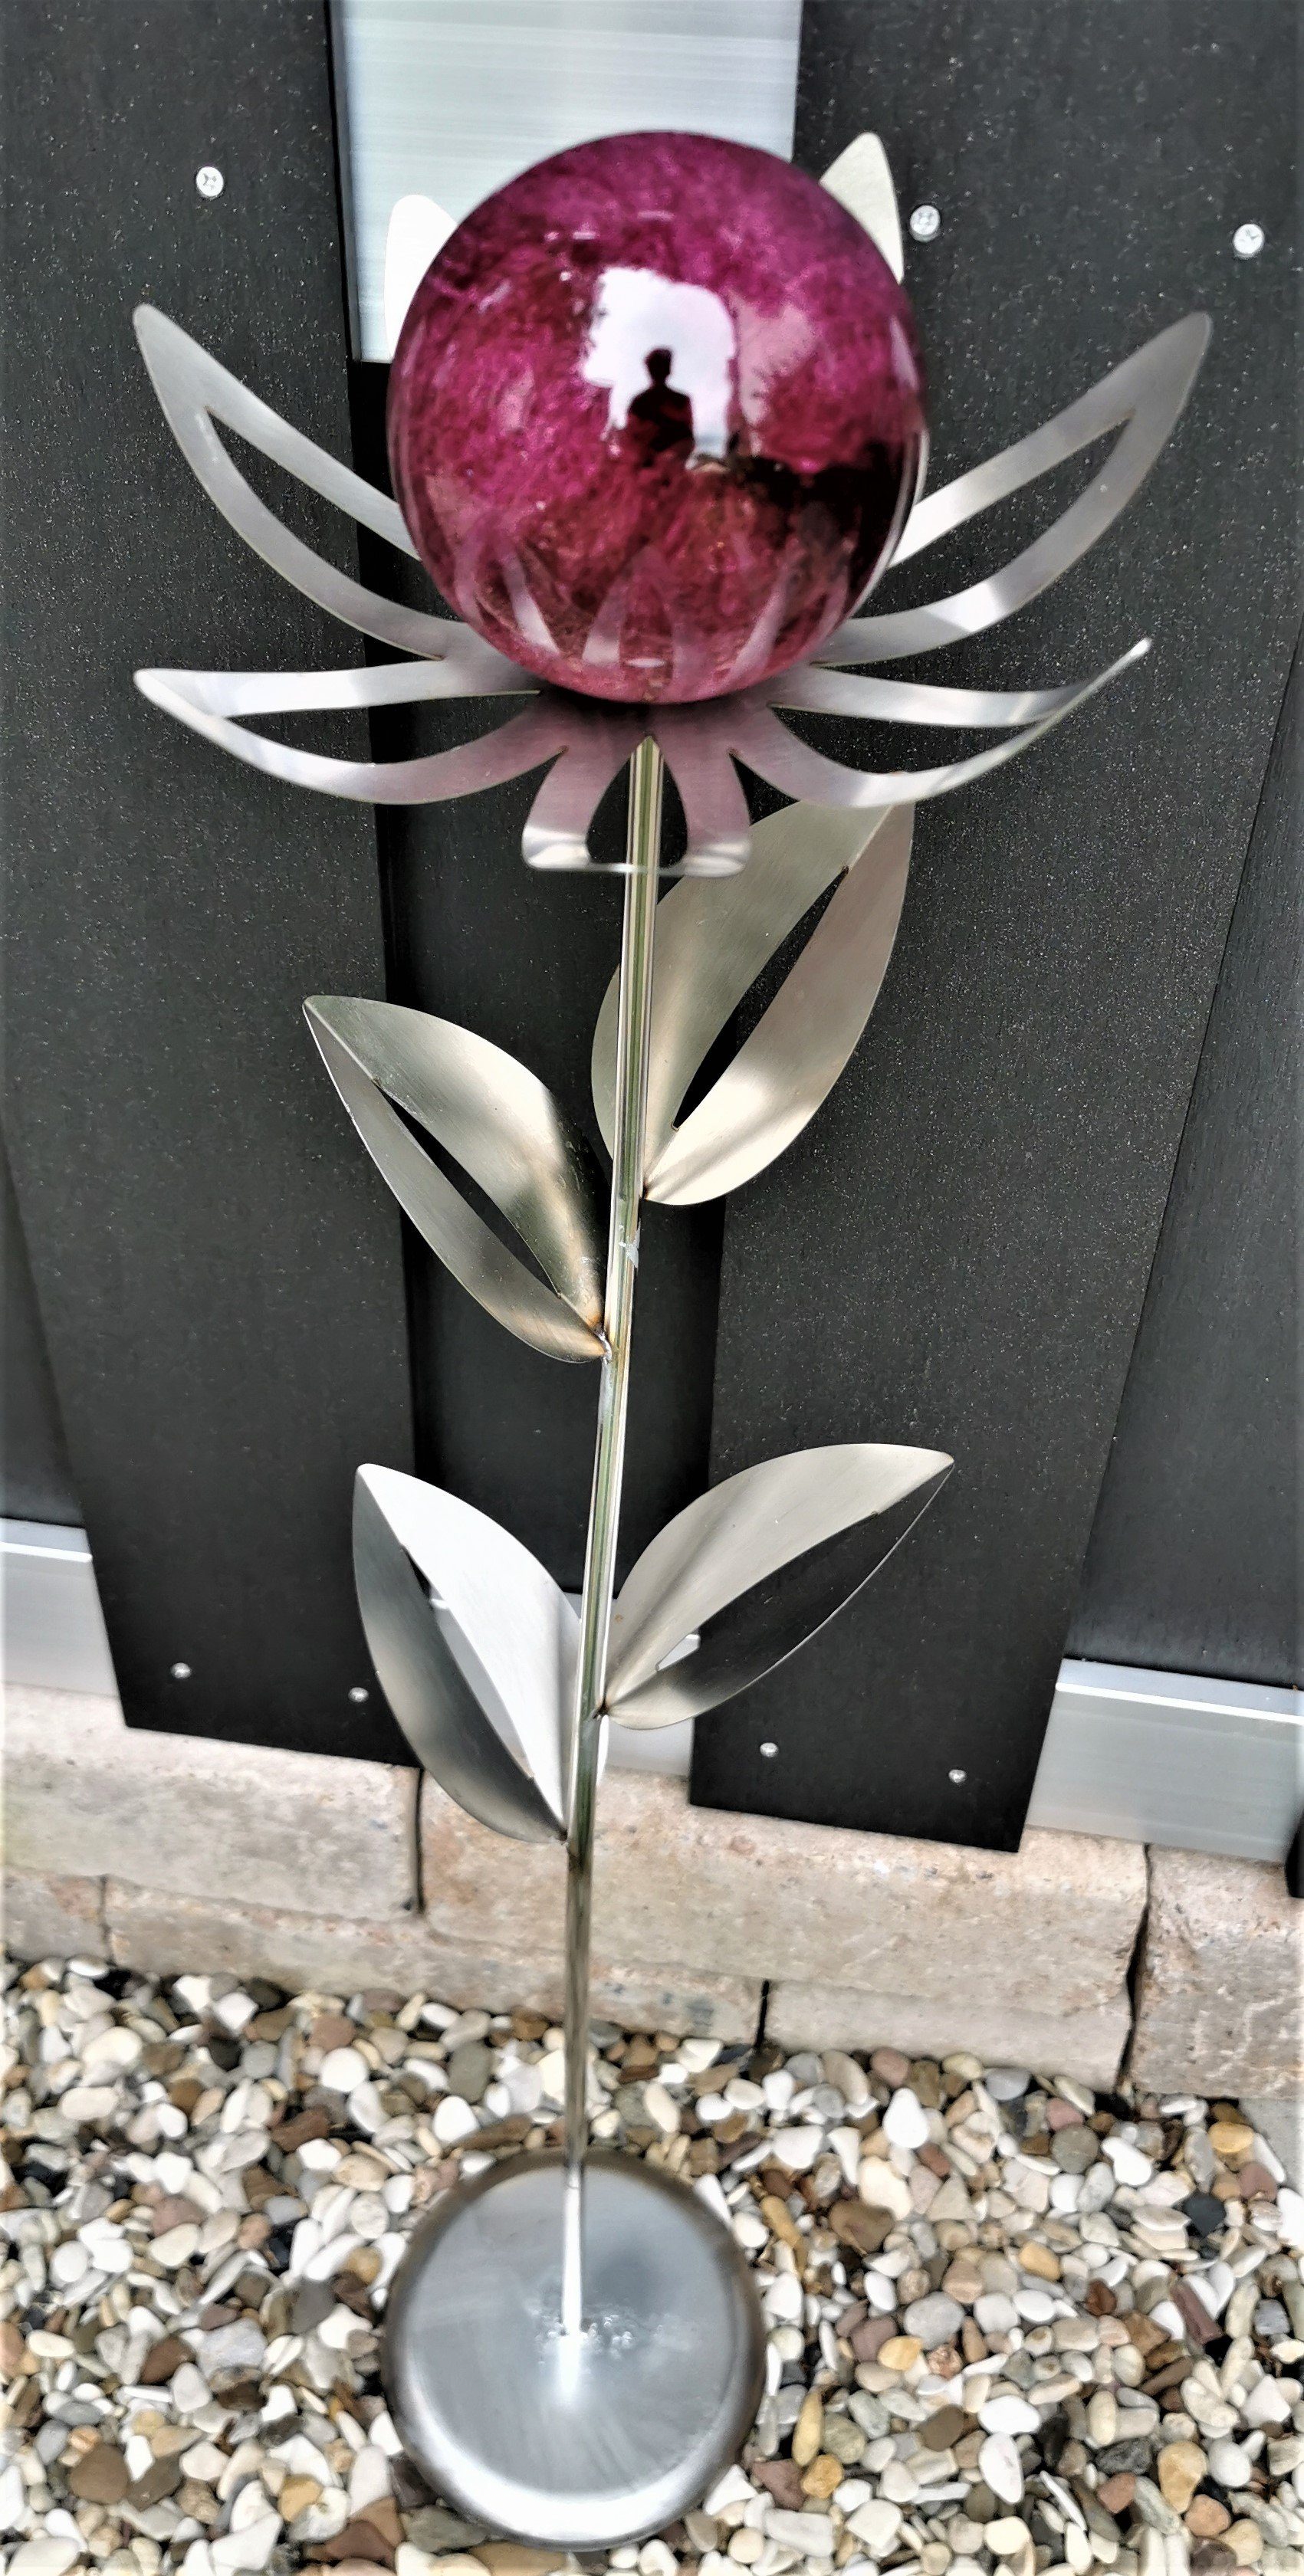 Jürgen Bocker Garten-Ambiente Gartenstecker Skulptur Blume Paris Edelstahl matt 77 cm mit Kugel und Standfuß violett